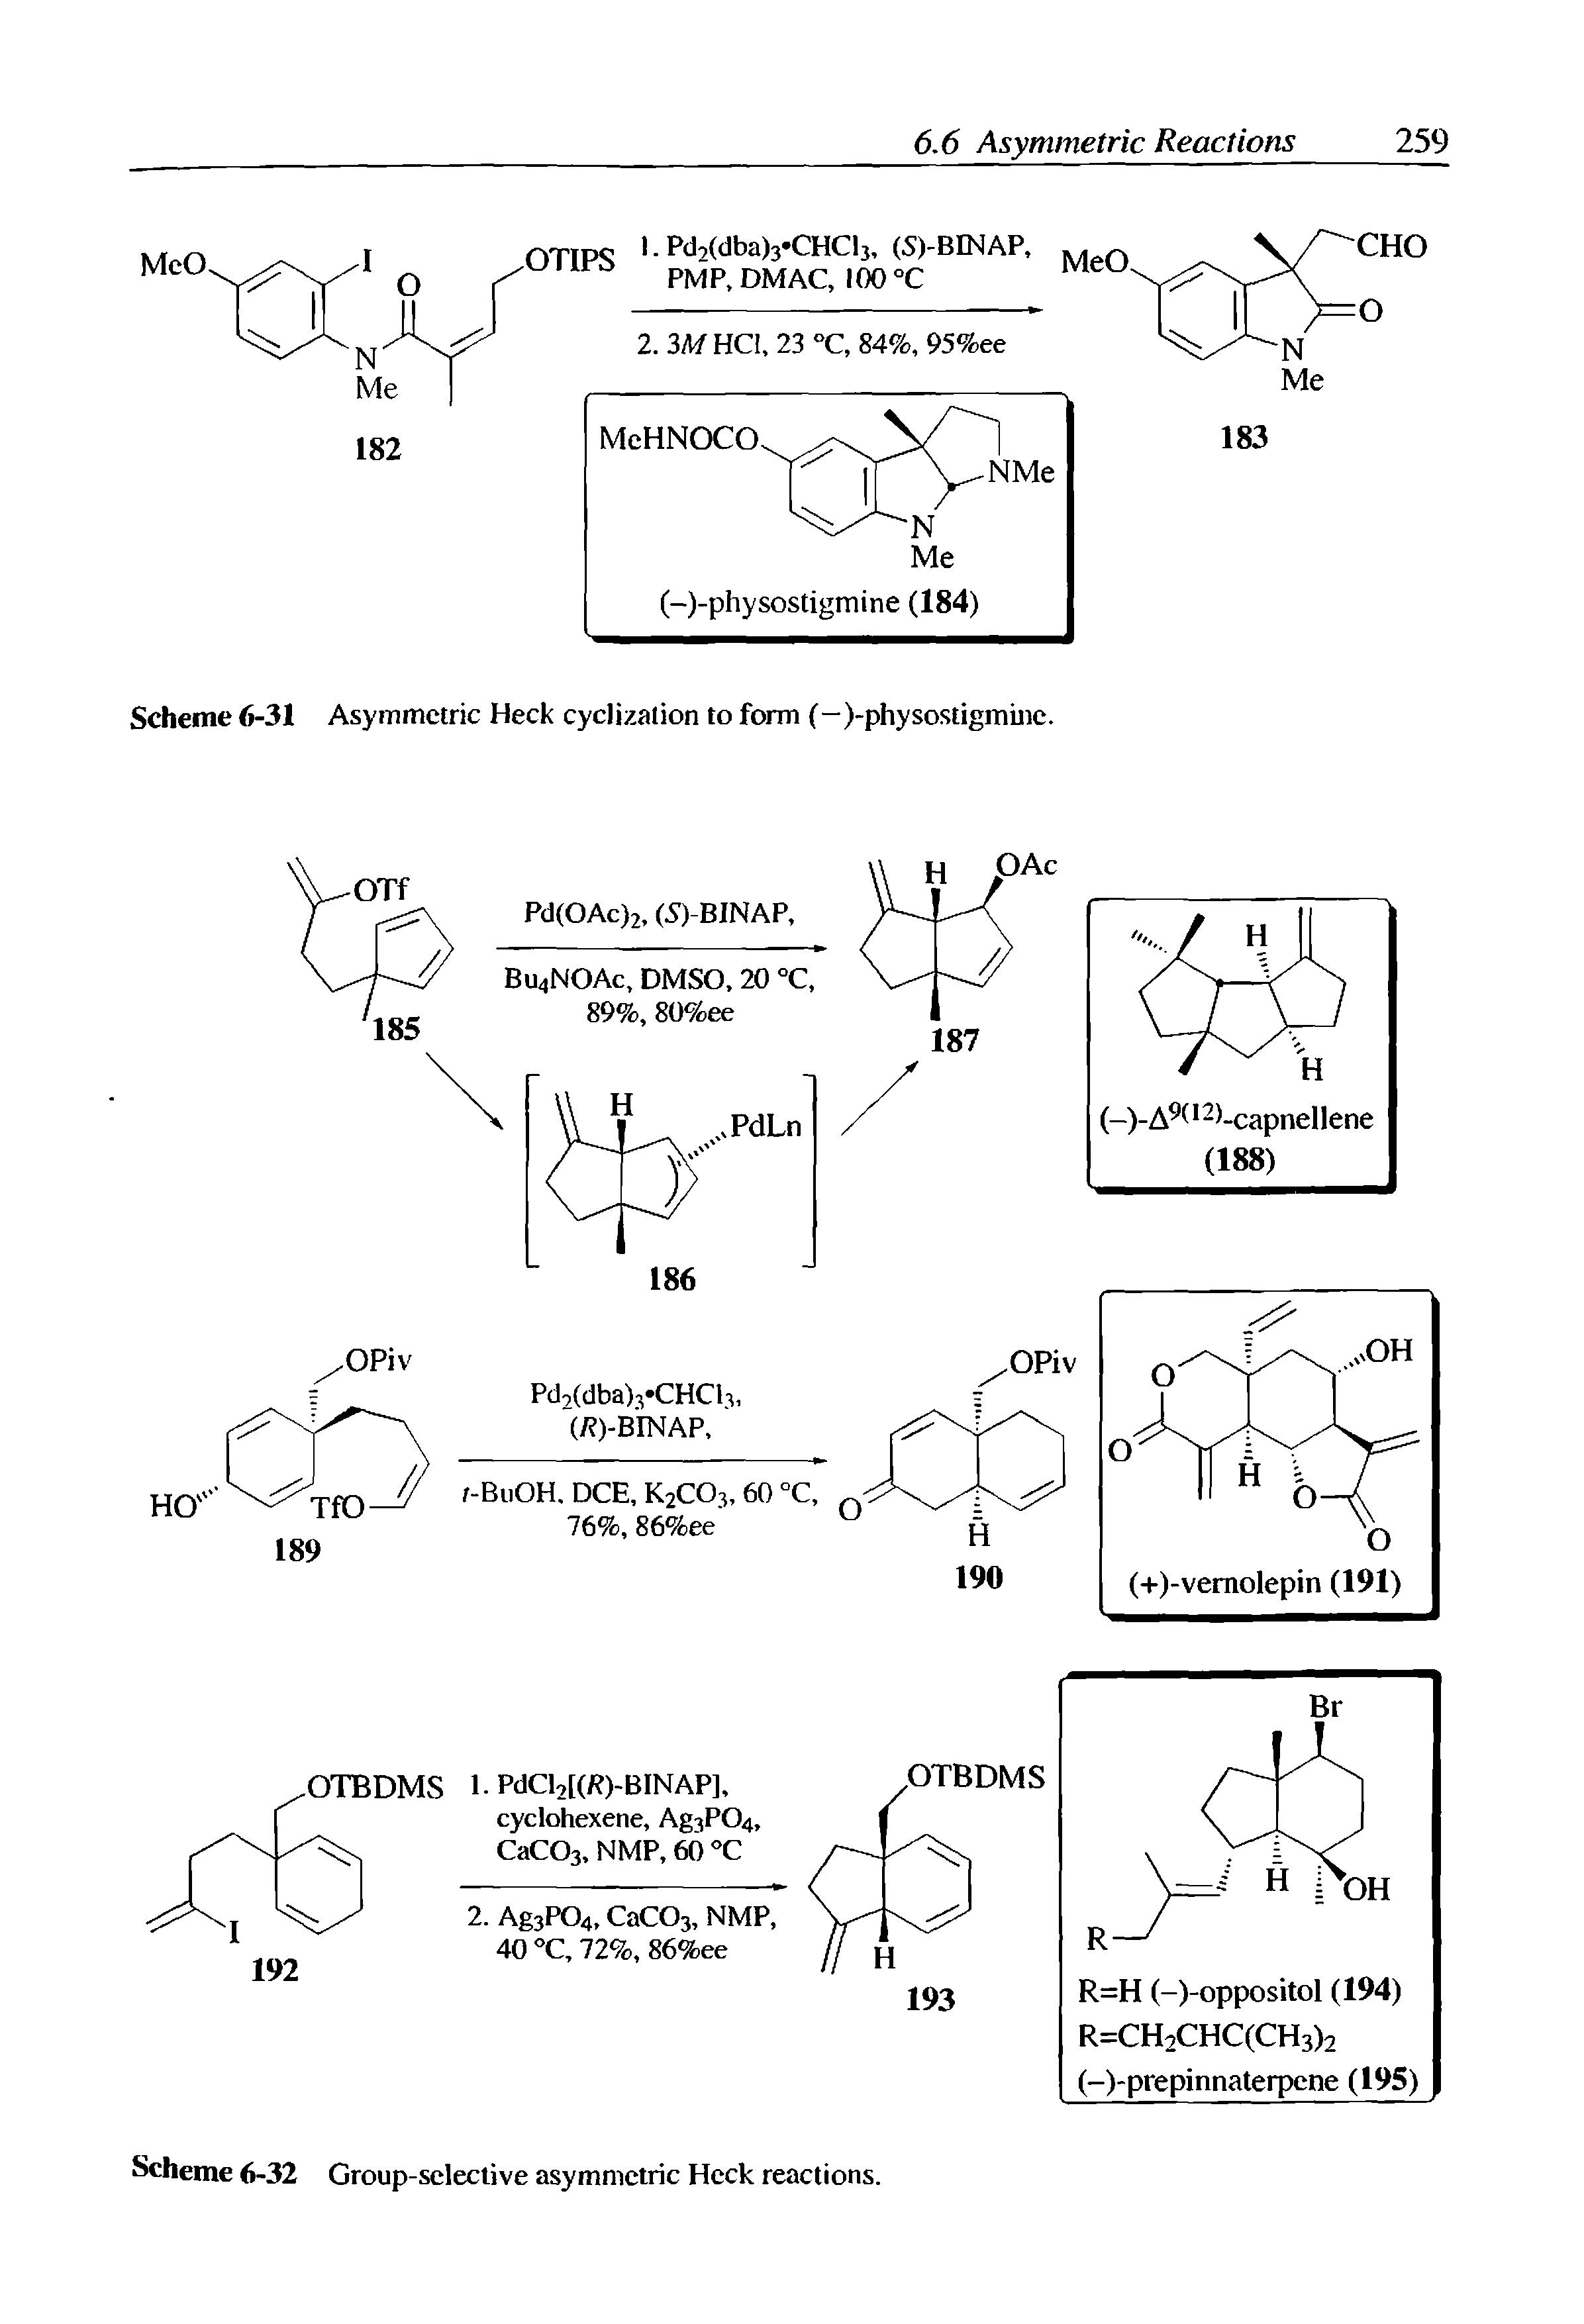 Scheme 6-32 Group-selective asymmetric Heck reactions.